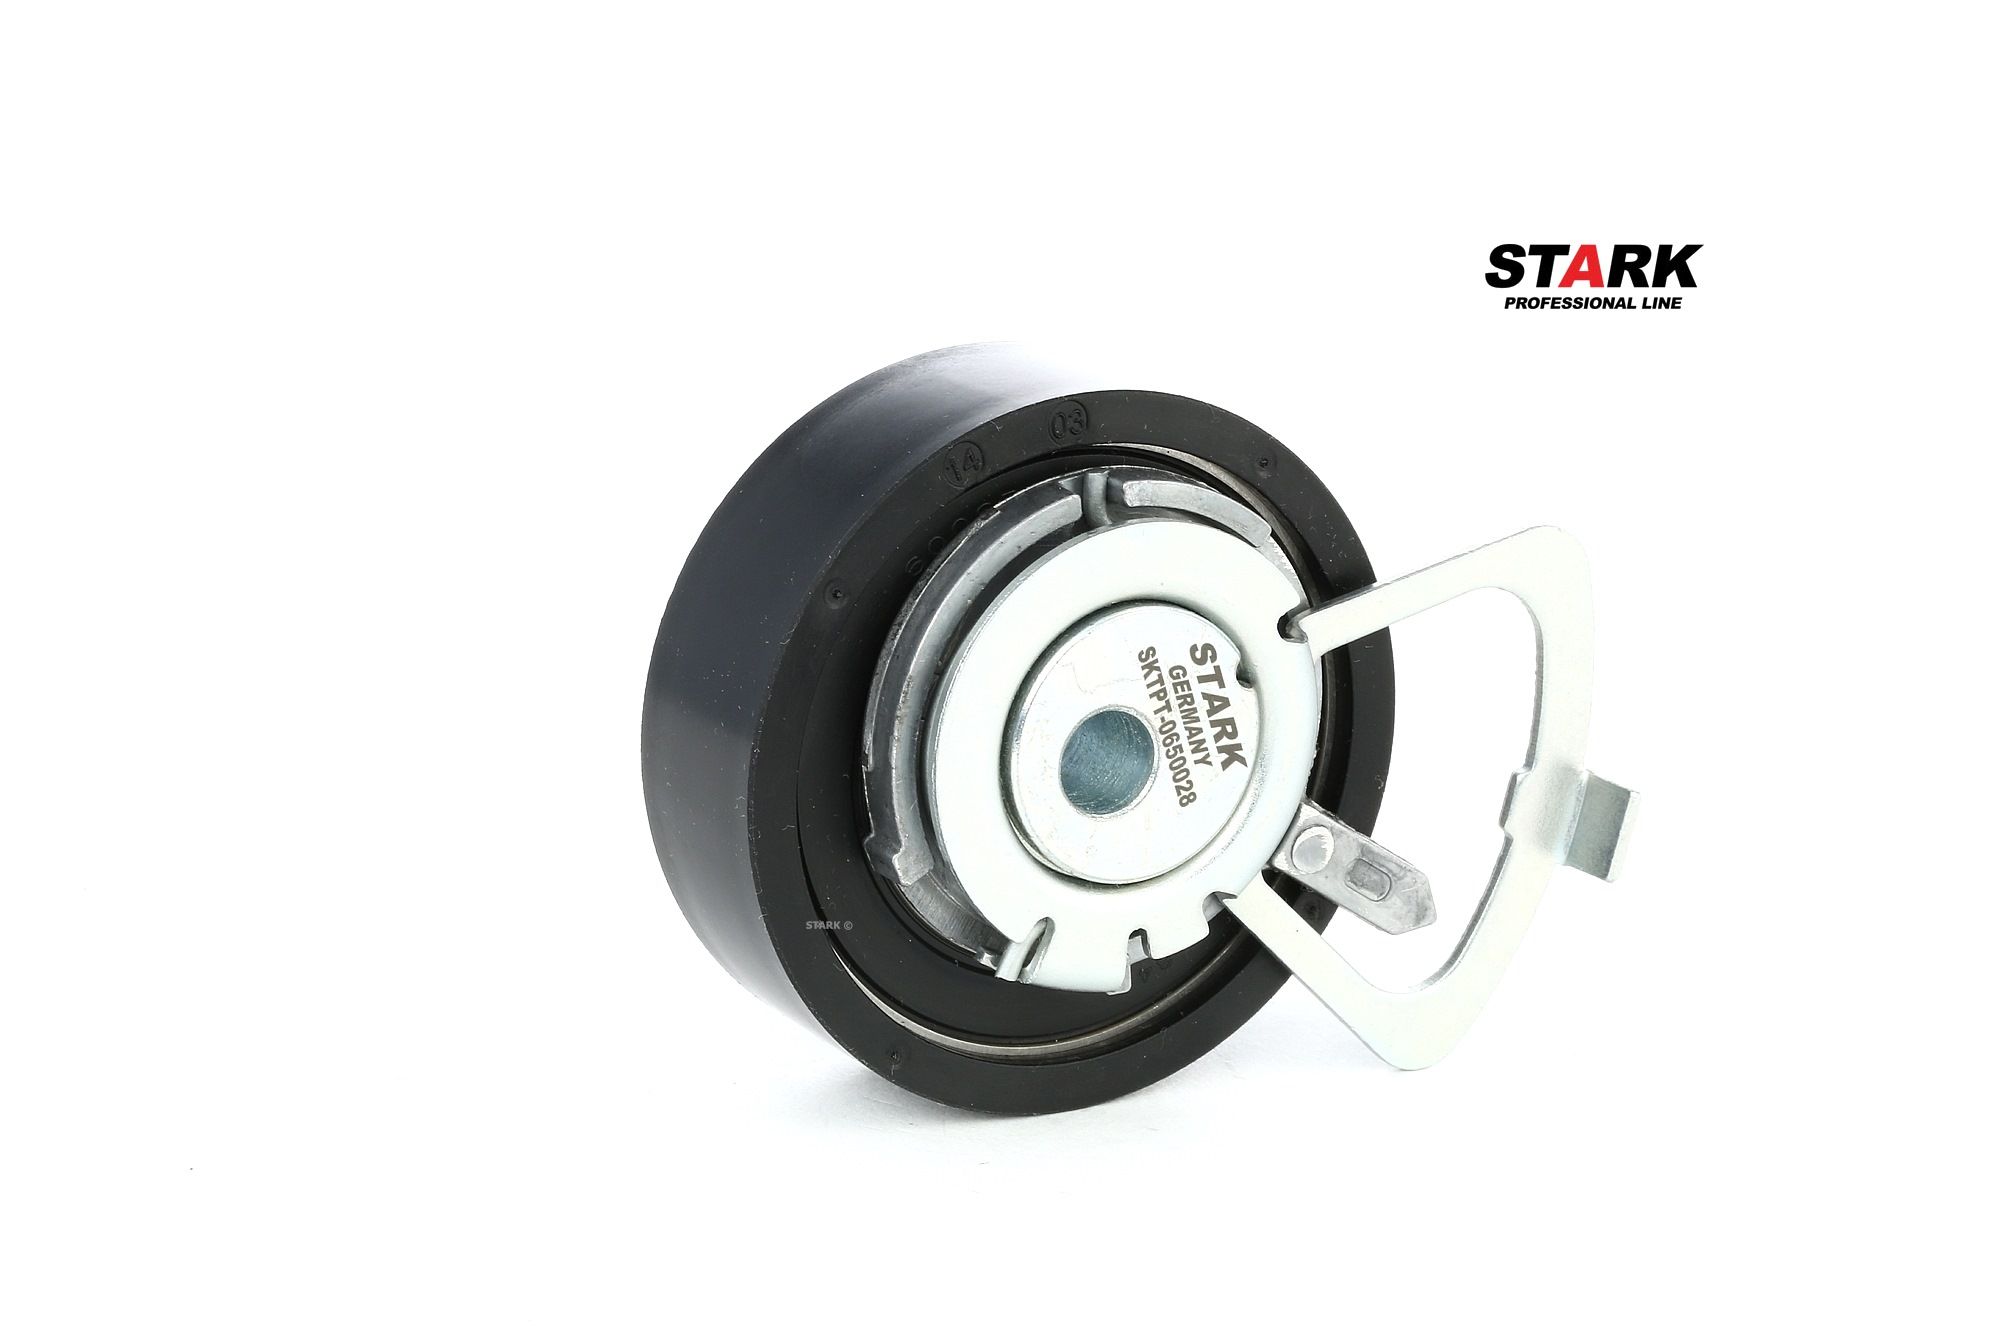 Skoda Timing belt tensioner pulley STARK SKTPT-0650028 at a good price